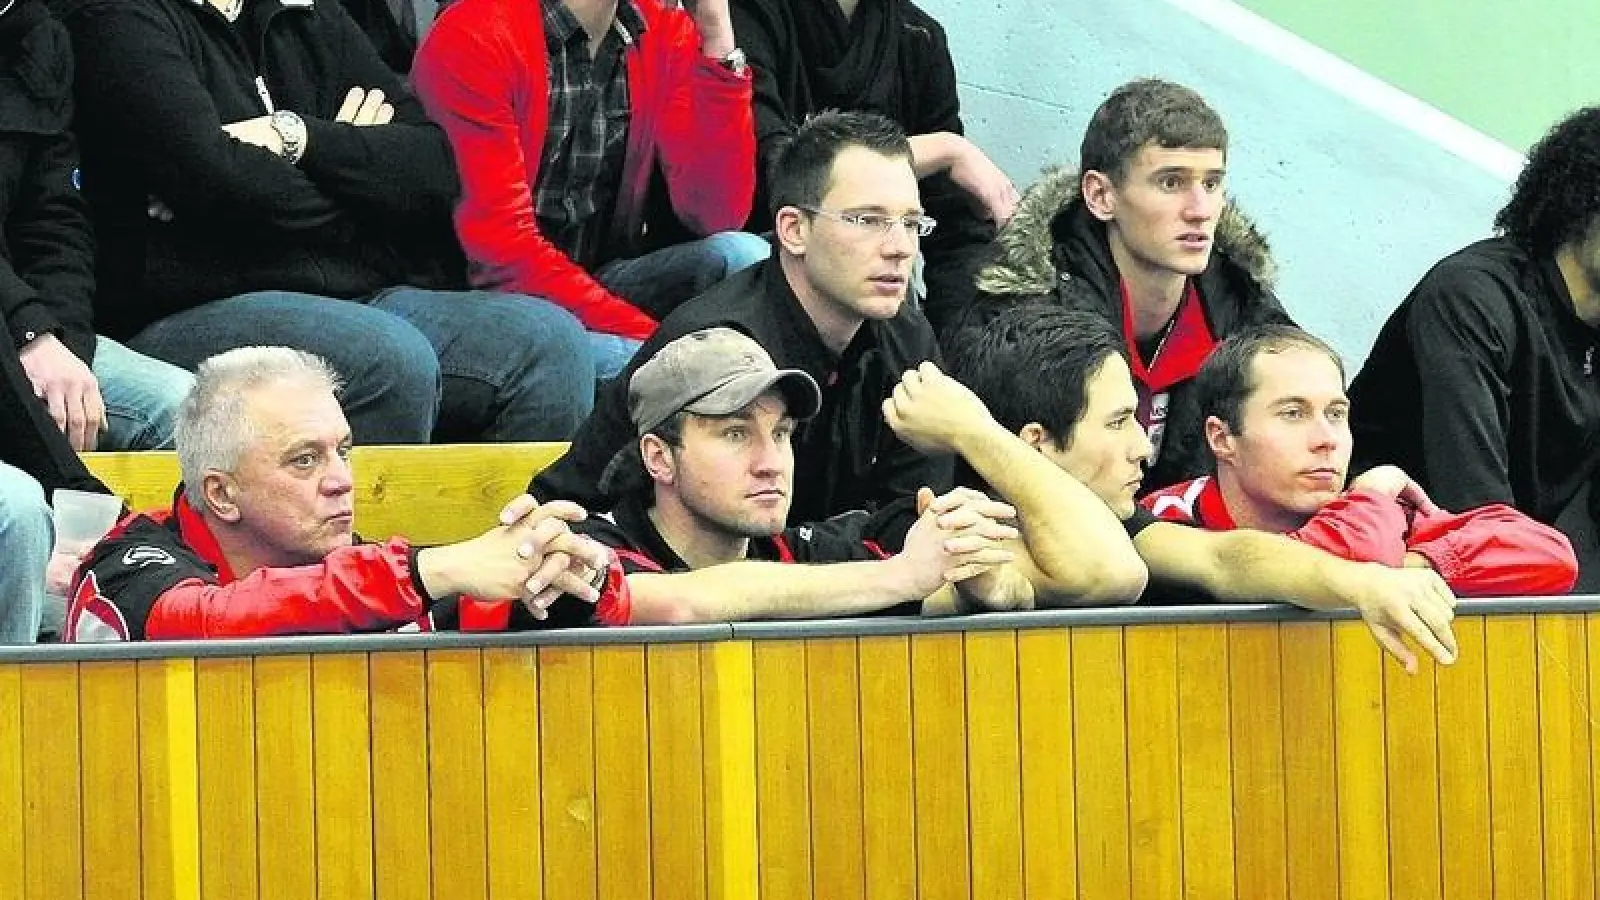 &lt;p&gt; &lt;x_bildunterschr&gt; &lt;b&gt;Tristesse auf der Tribüne.  &lt;/b&gt;Aindlings Fußballer konnten früher, als ihnen lieb war, dem Spielbetriebsvorsitzenden Josef Kigle (links) auf der Tribüne Gesellschaft leisten: (vorne von rechts) Thomas Geisler, Max Mies, Michael Zerle sowie (hinten von rechts) Simon Knauer und Tobias Hellmann. &lt;tab/&gt;Fotos: Kerpf &lt;/x_bildunterschr&gt; &lt;/p&gt;